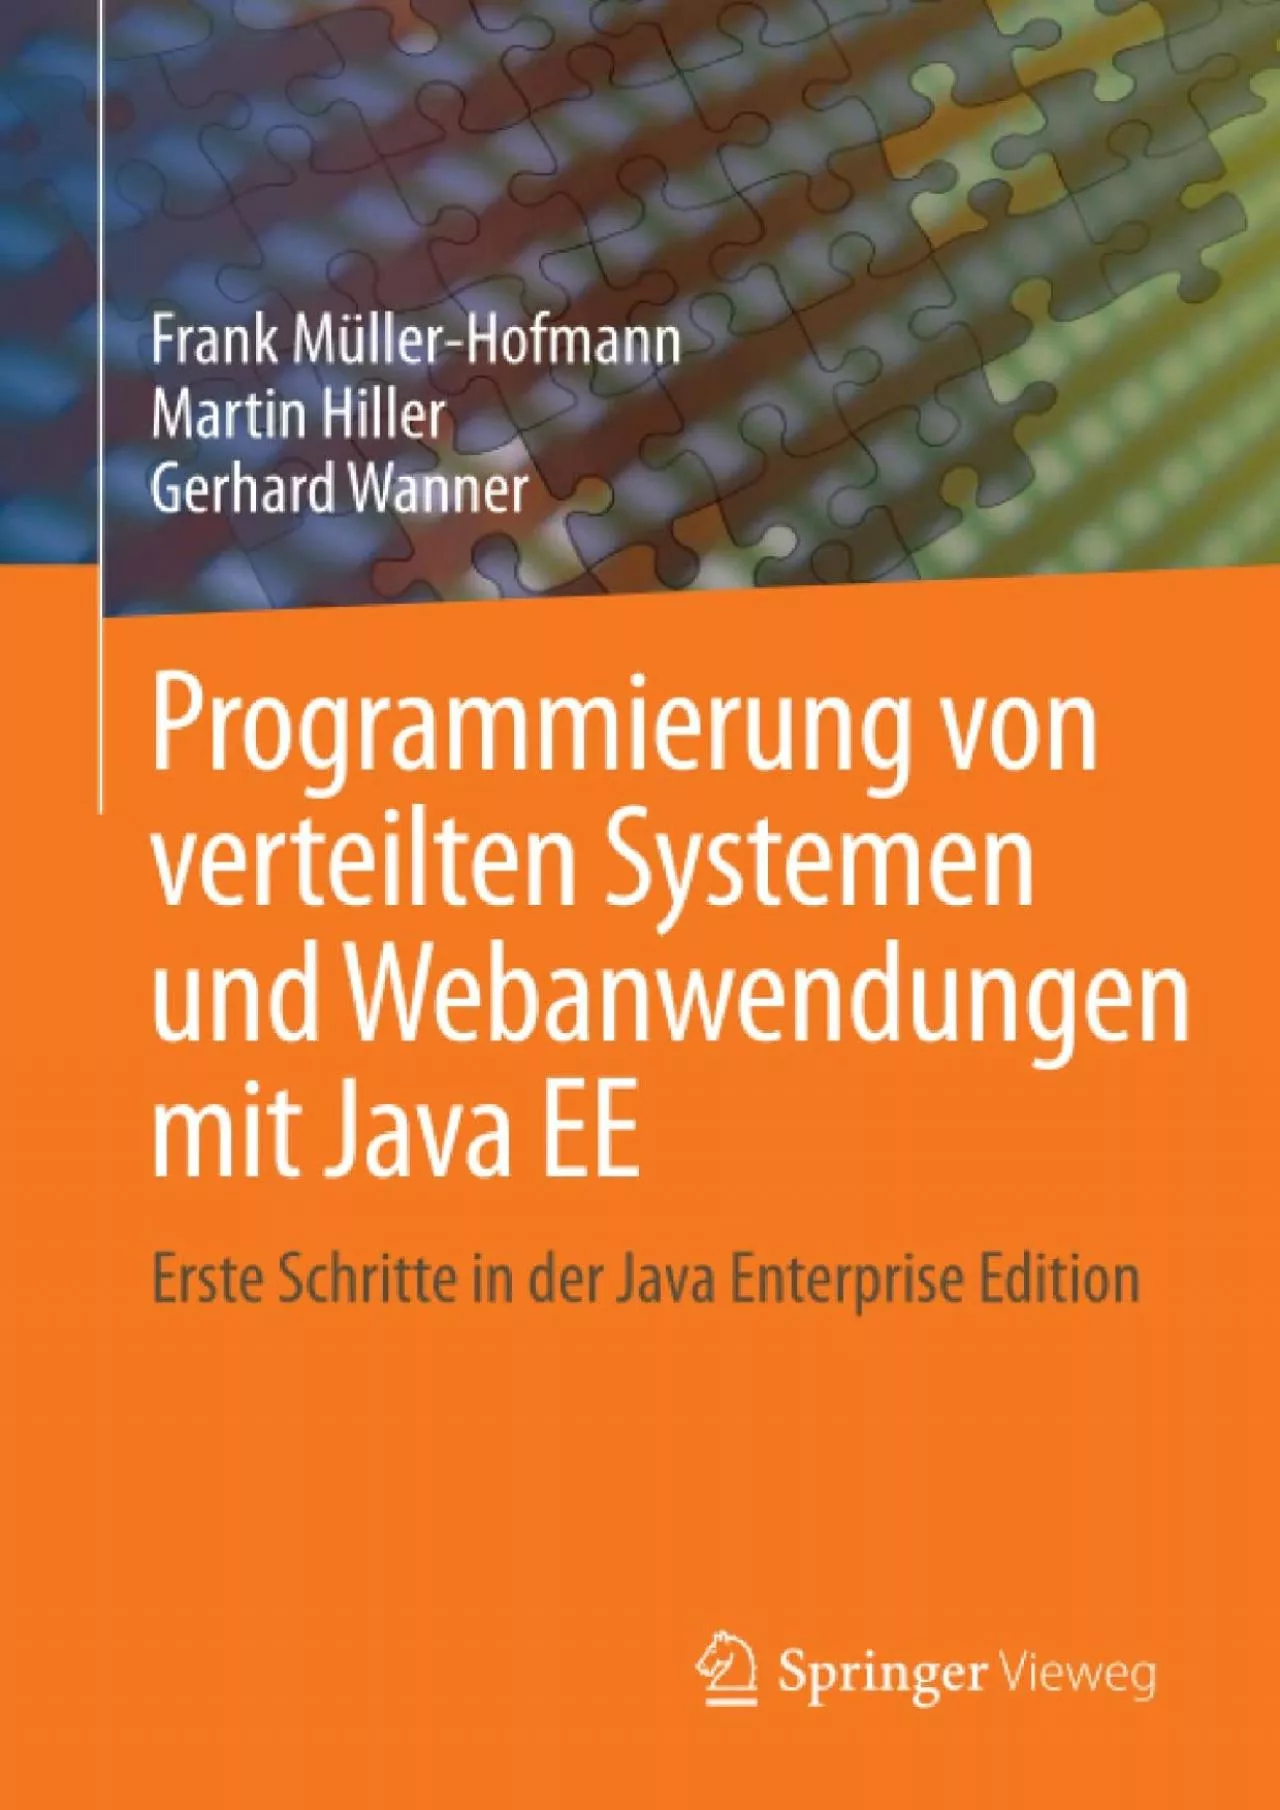 [FREE]-Programmierung von verteilten Systemen und Webanwendungen mit Java EE: Erste Schritte